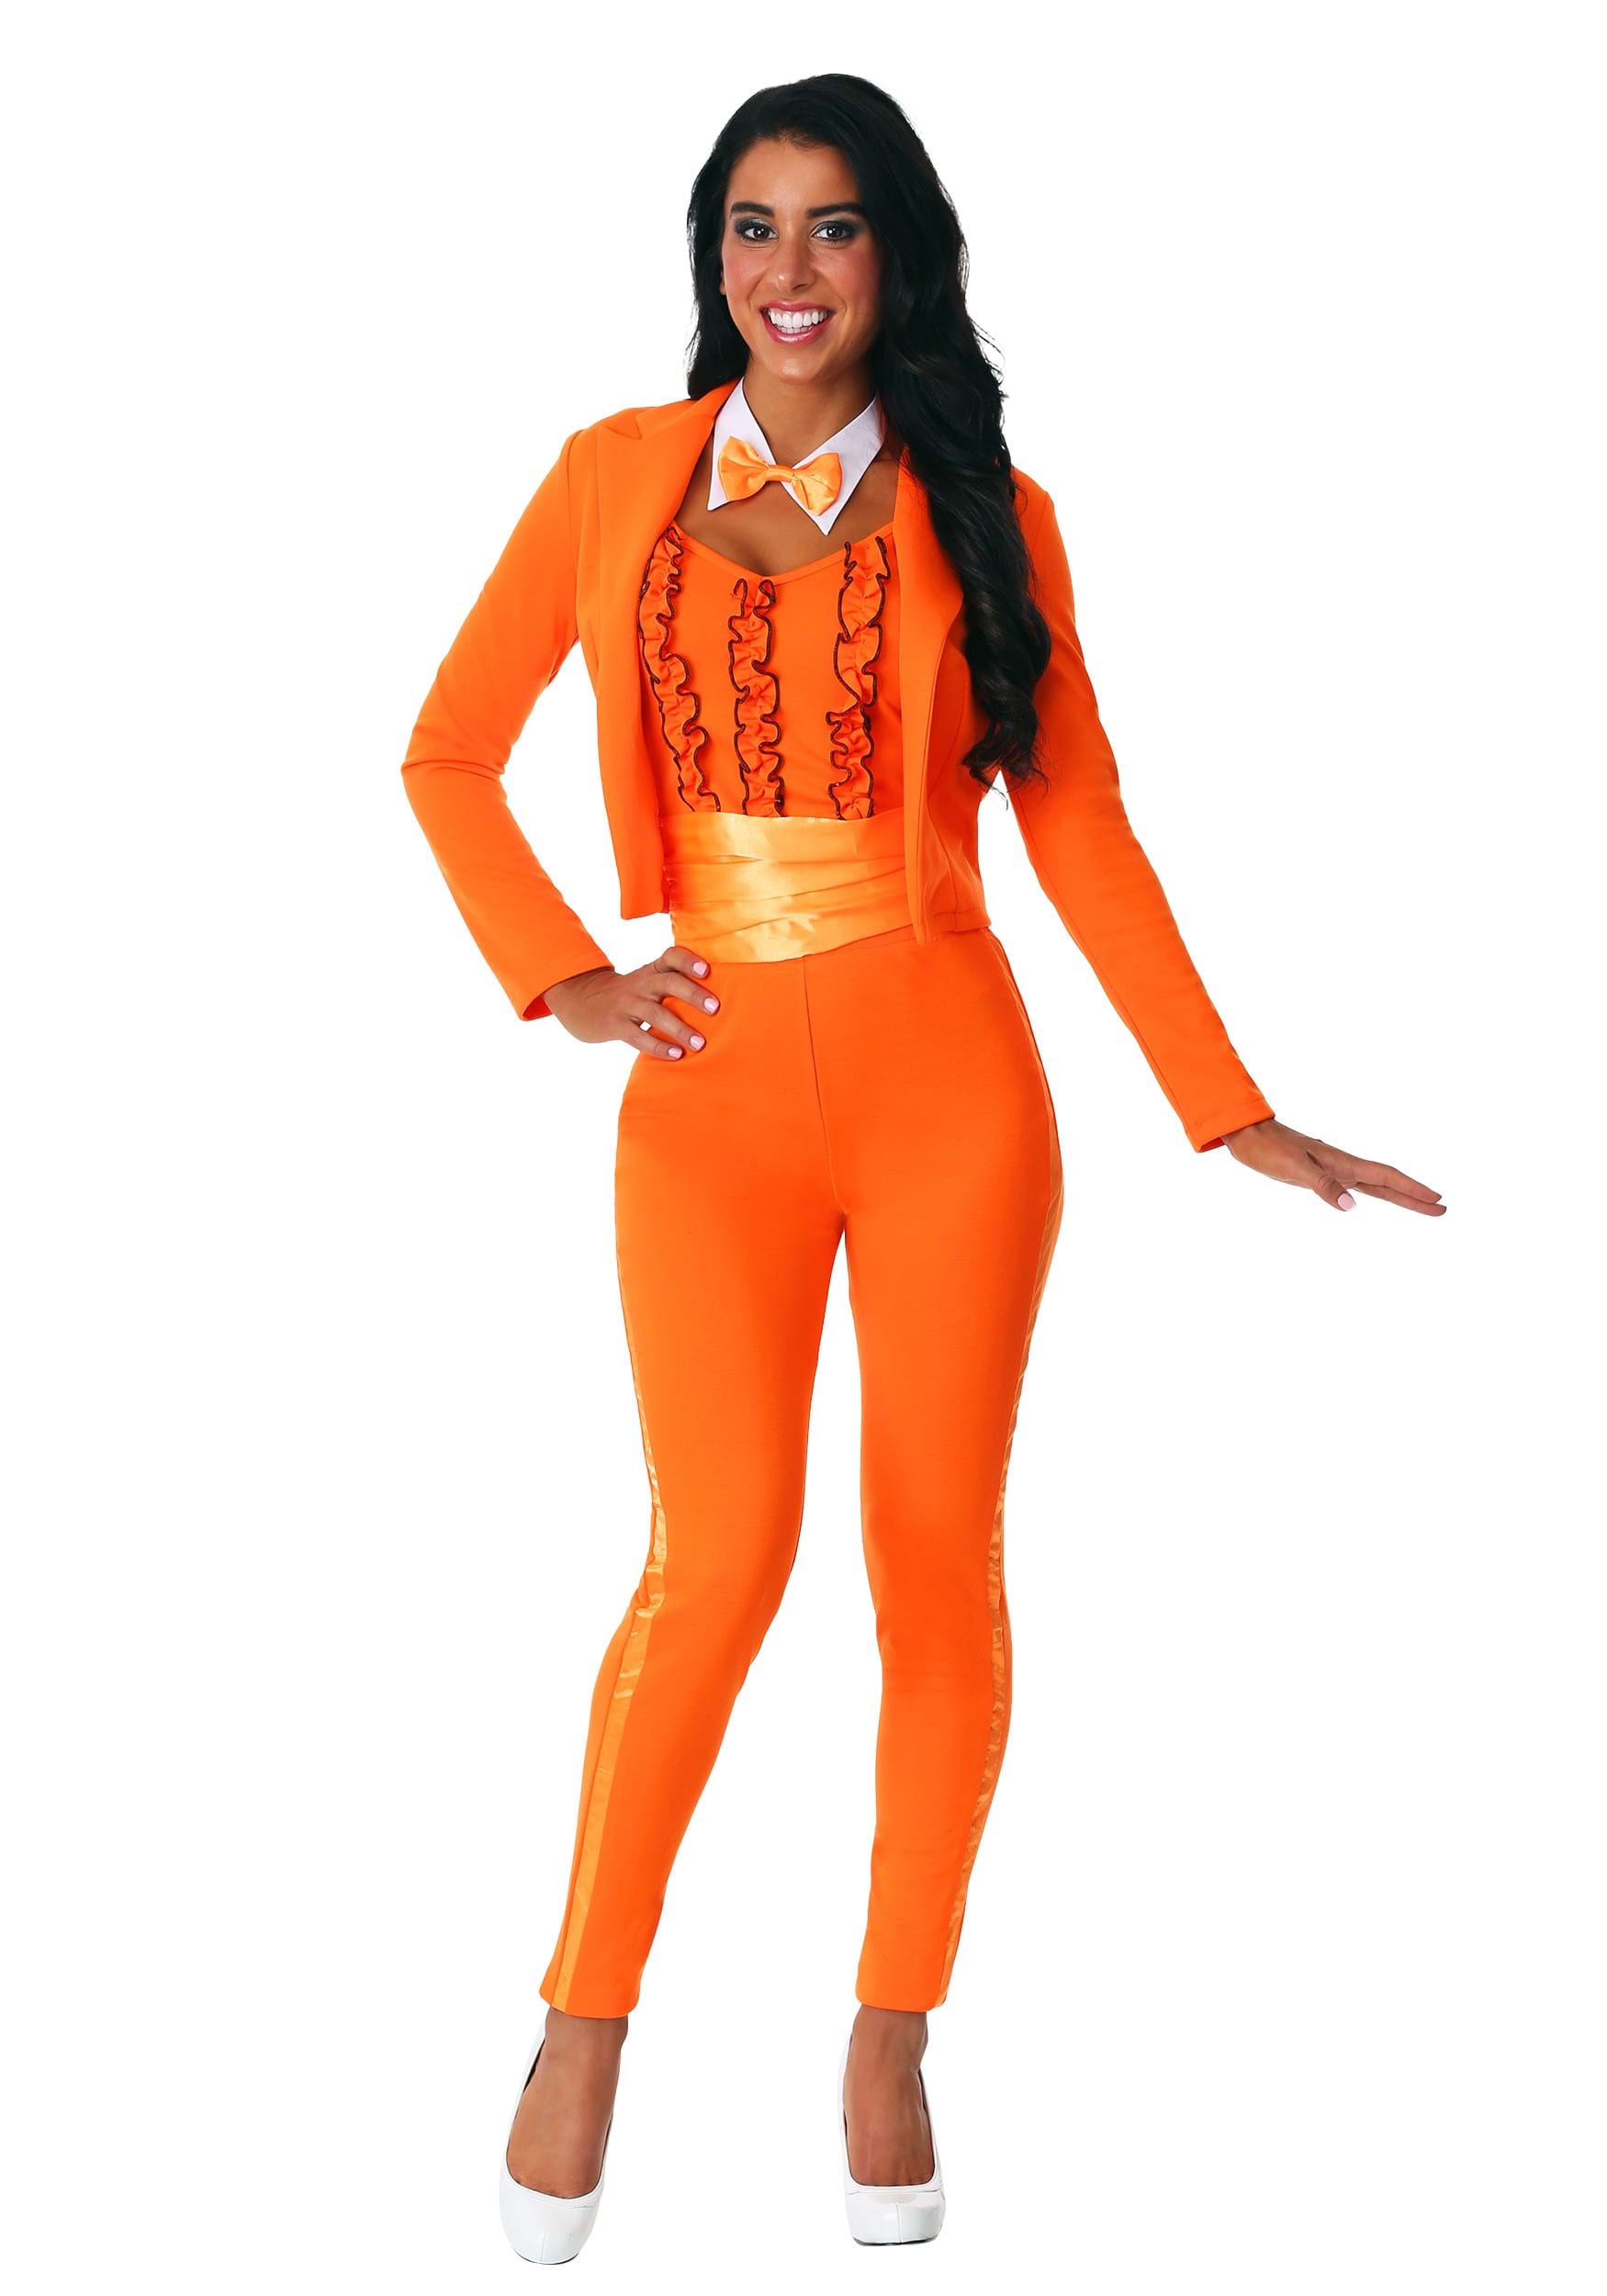 Women's Orange Tuxedo Costume